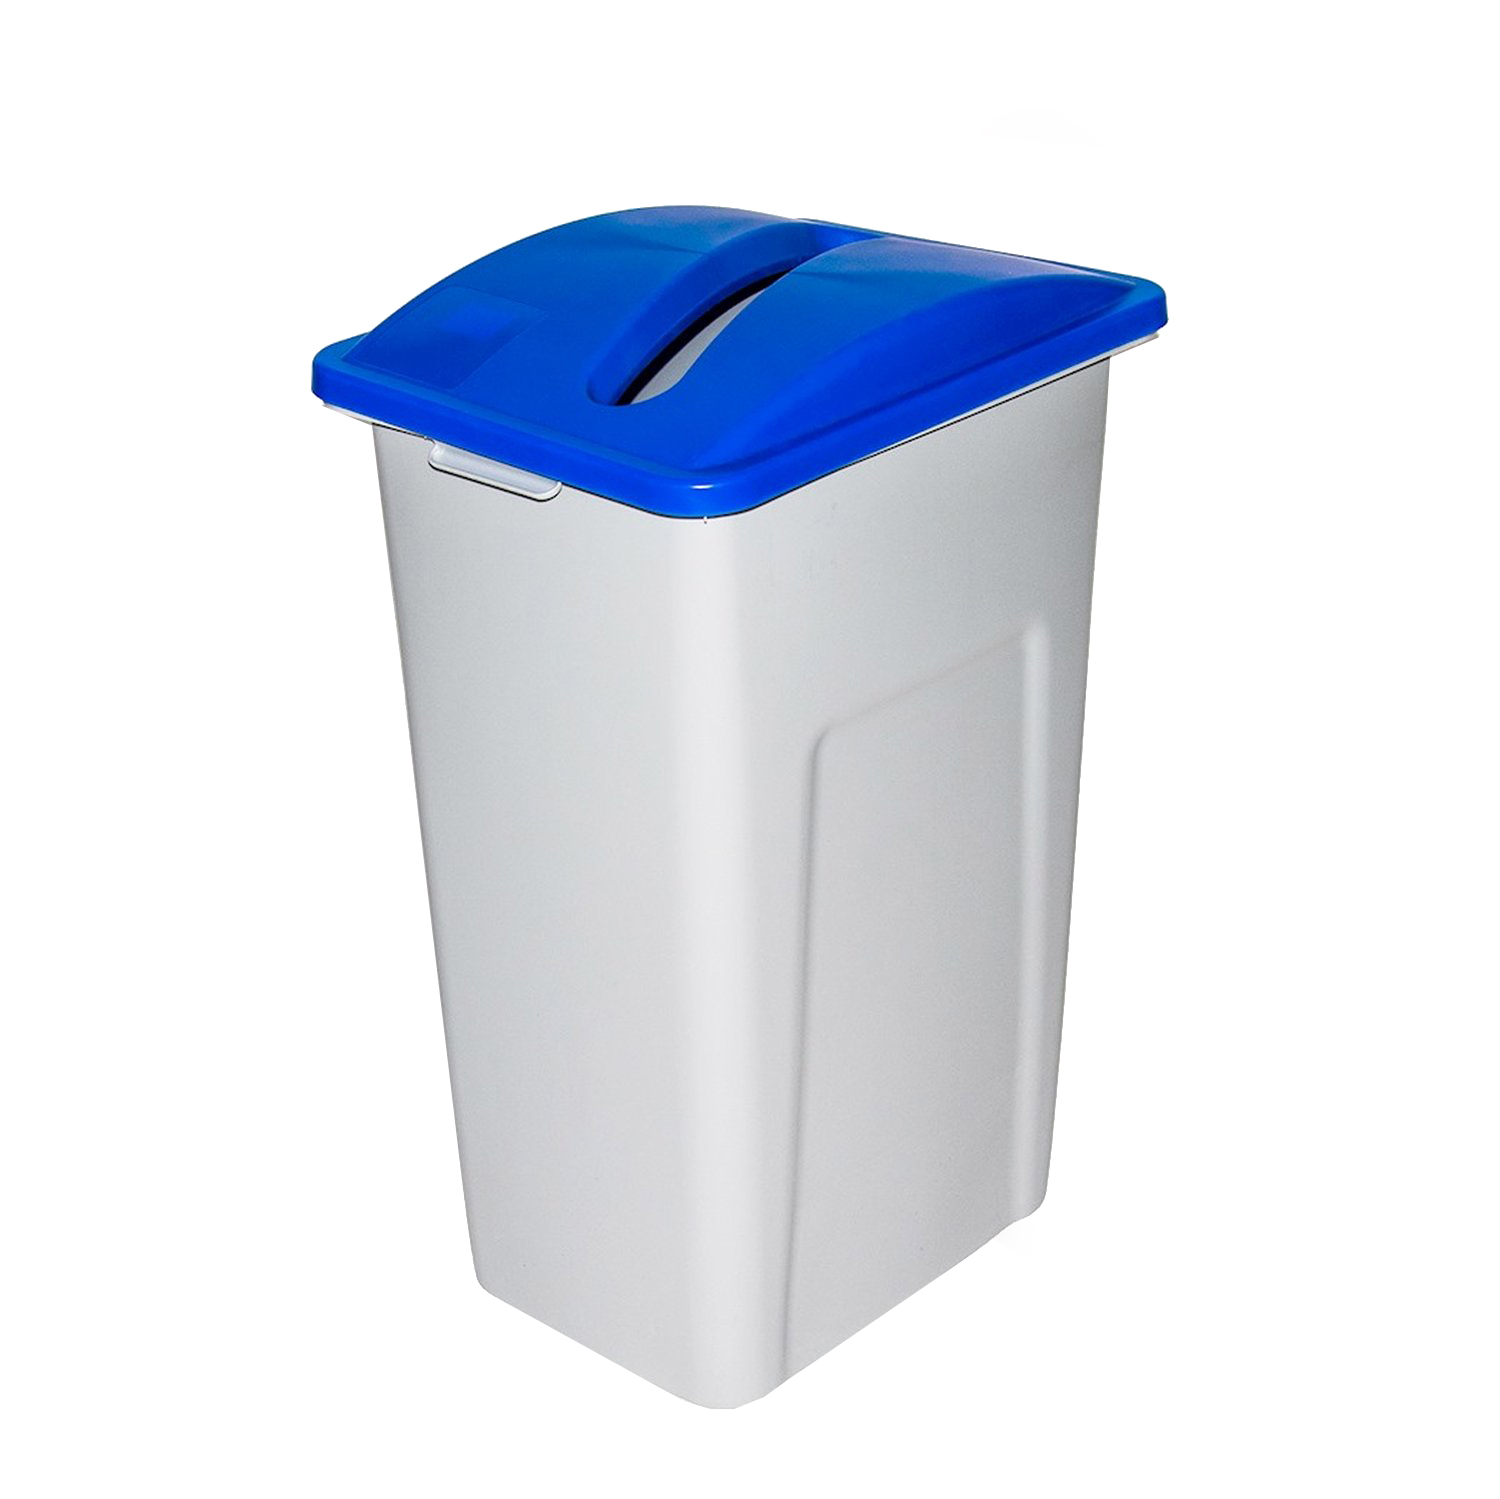 WWXL-BL Je kan zelf kiezen welke afvalsoort je inzamelt in deze bak, bijvoorbeeld restafval, papier of PMD. Mocht je nog duidelijker willen aangeven voor welke afvalsoort de bak bedoeld is, dan raden we je aan om onze leuke Waste Watcher stickers te bestellen.